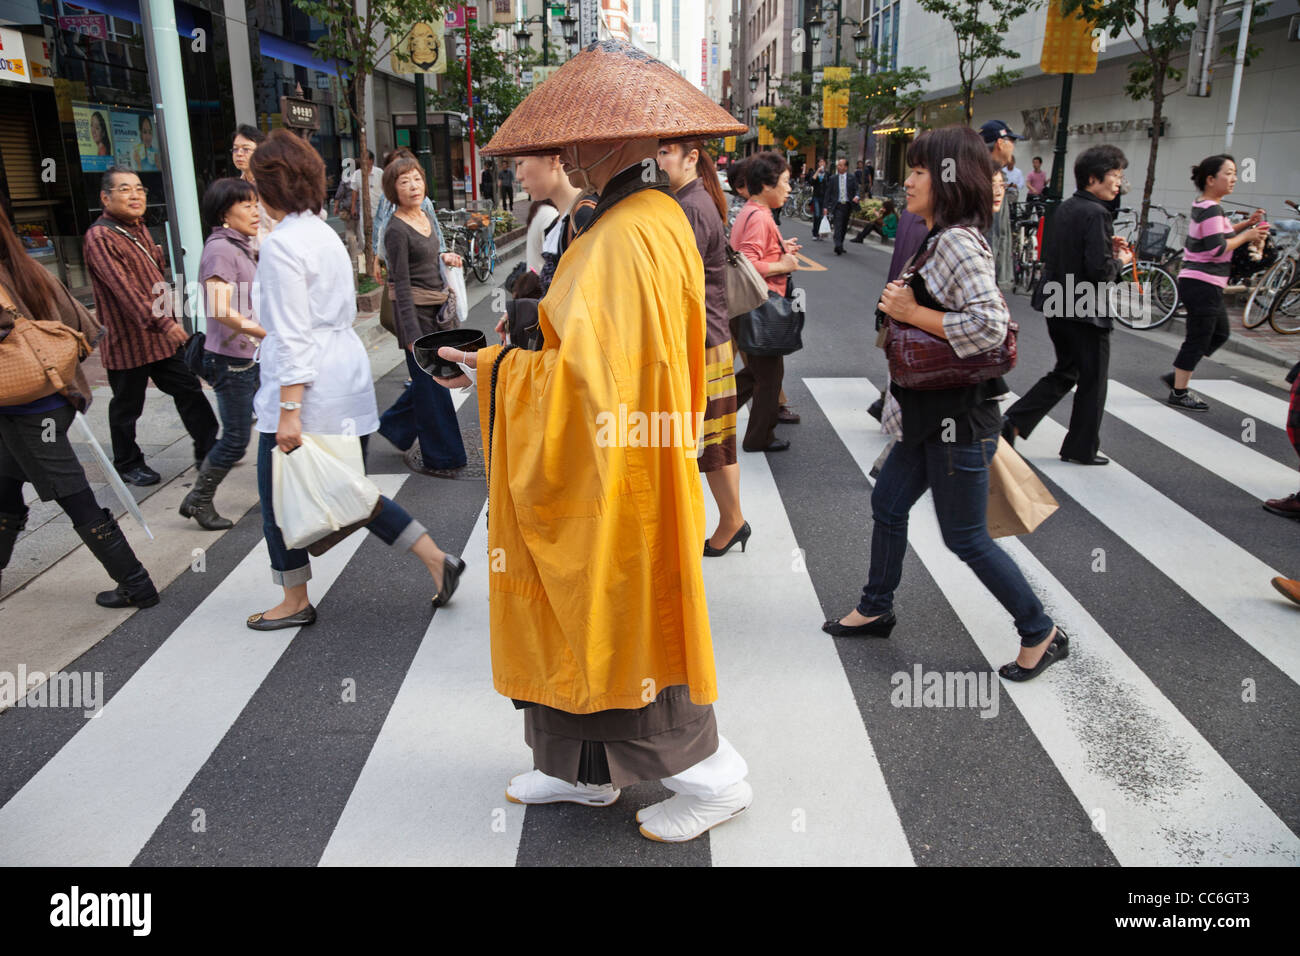 Japon, Tokyo, Ginza, moine de recueillir des aumônes Banque D'Images